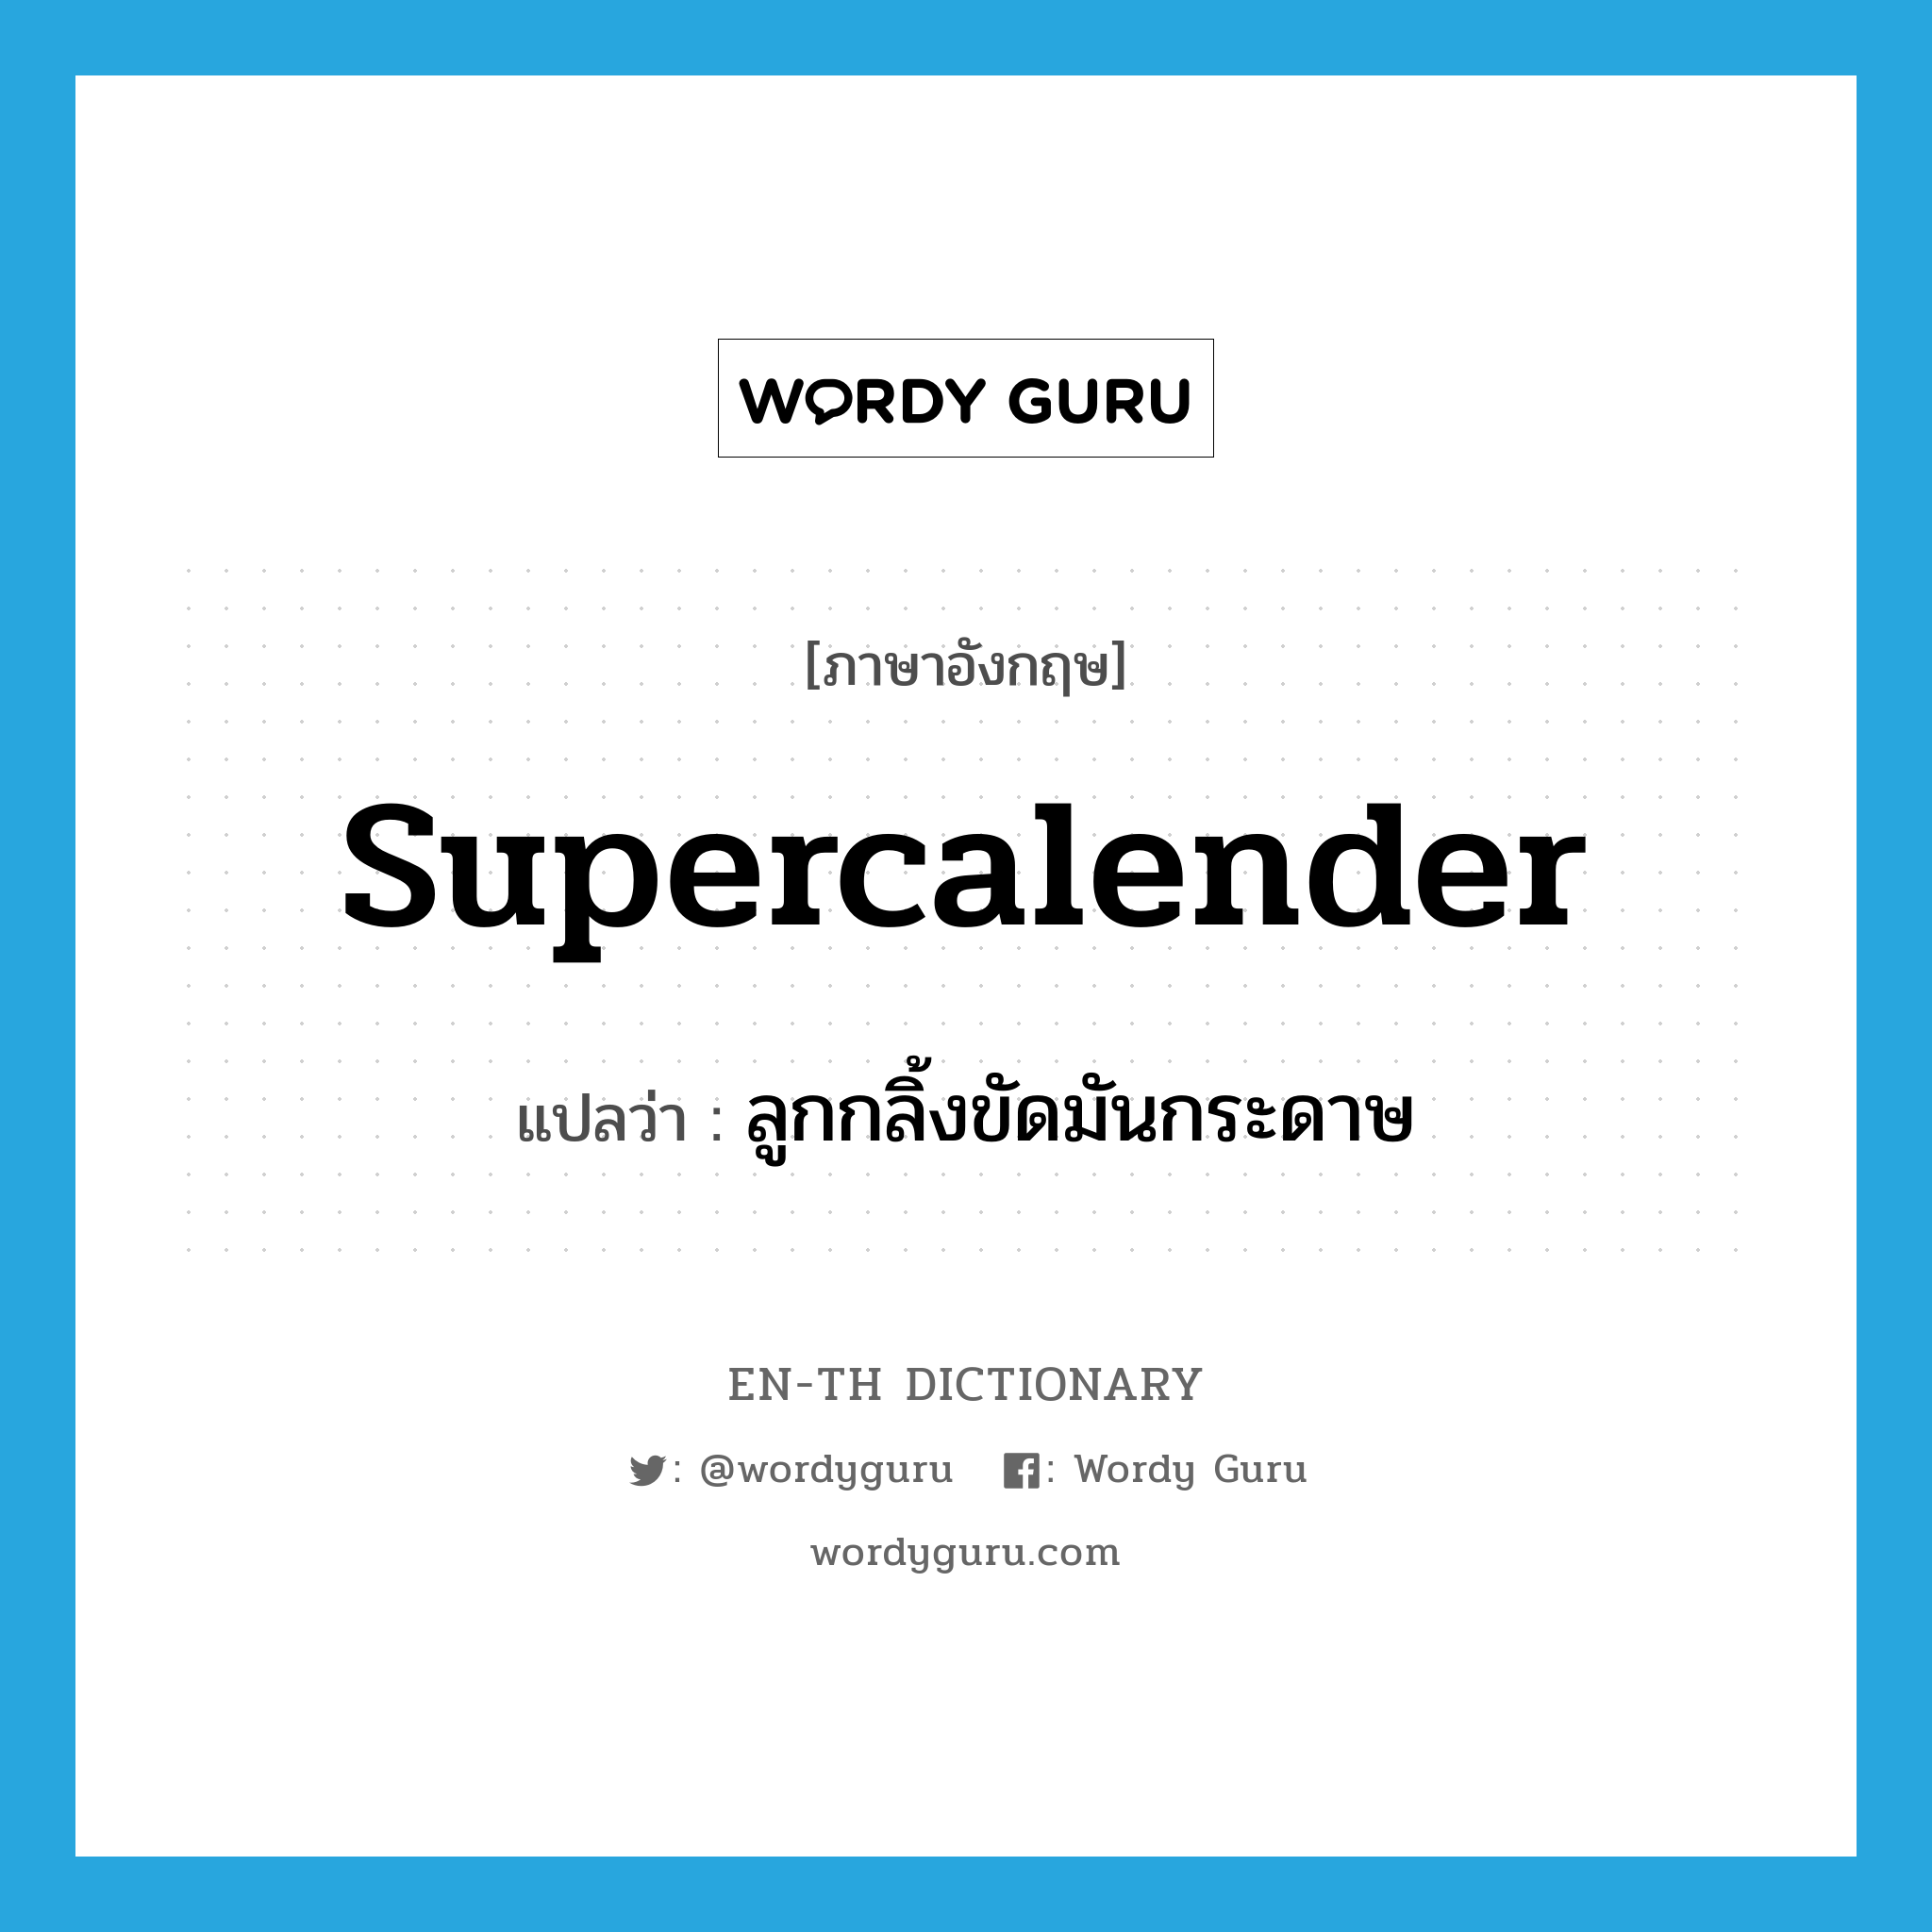 supercalender แปลว่า?, คำศัพท์ภาษาอังกฤษ supercalender แปลว่า ลูกกลิ้งขัดมันกระดาษ ประเภท N หมวด N